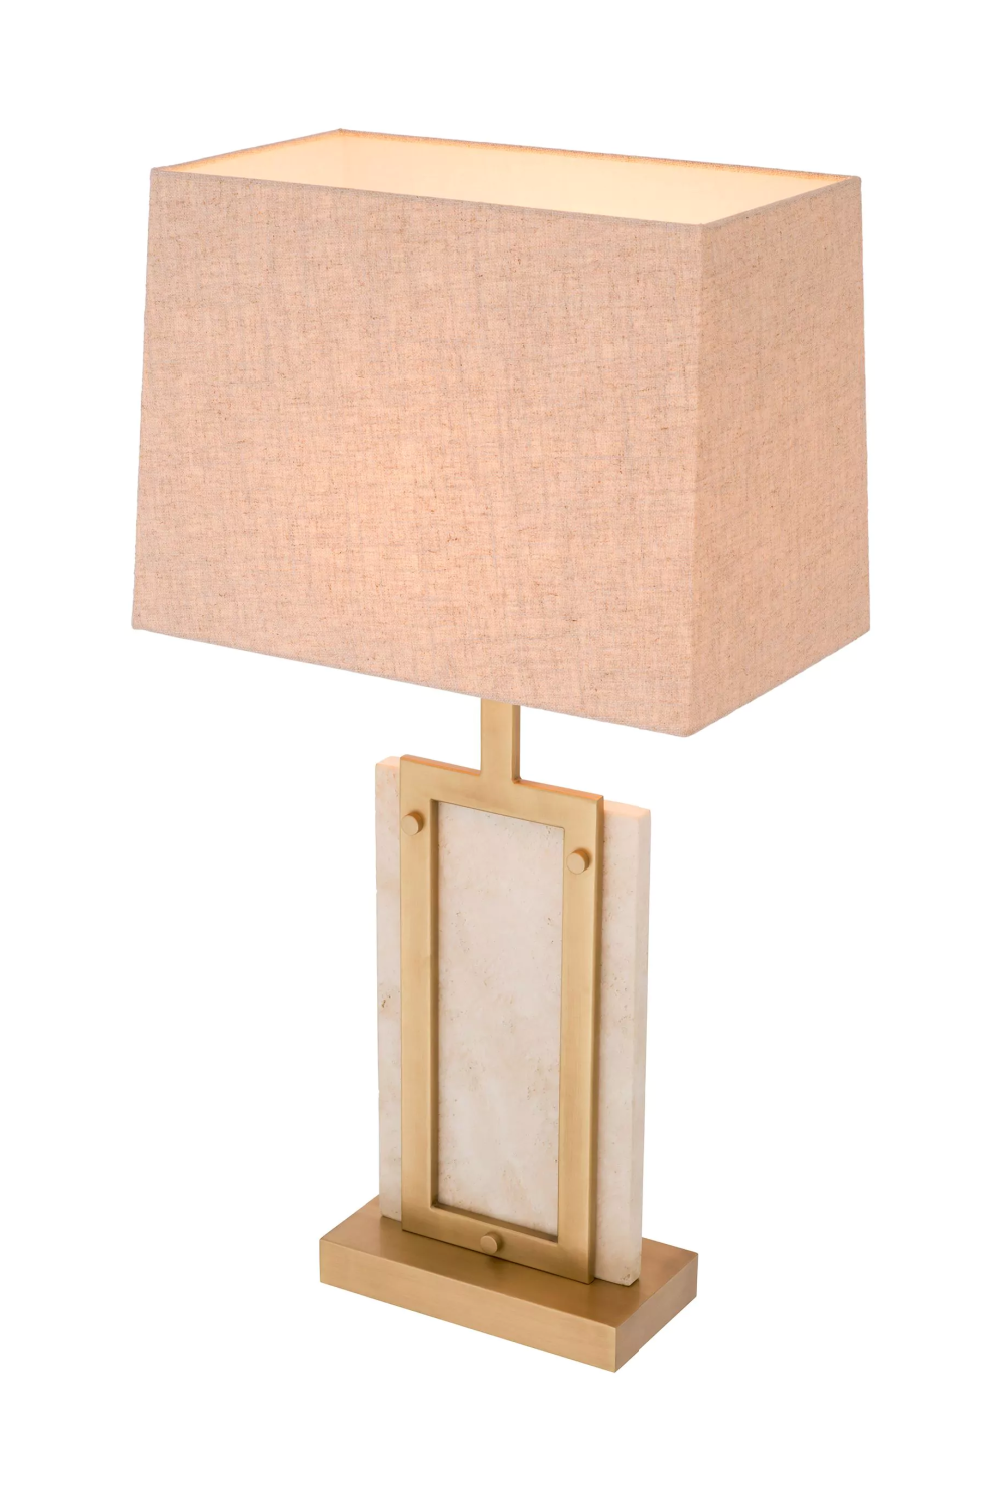 Classic Contemporary Table Lamp | Eichholtz Murray | Oroa.com